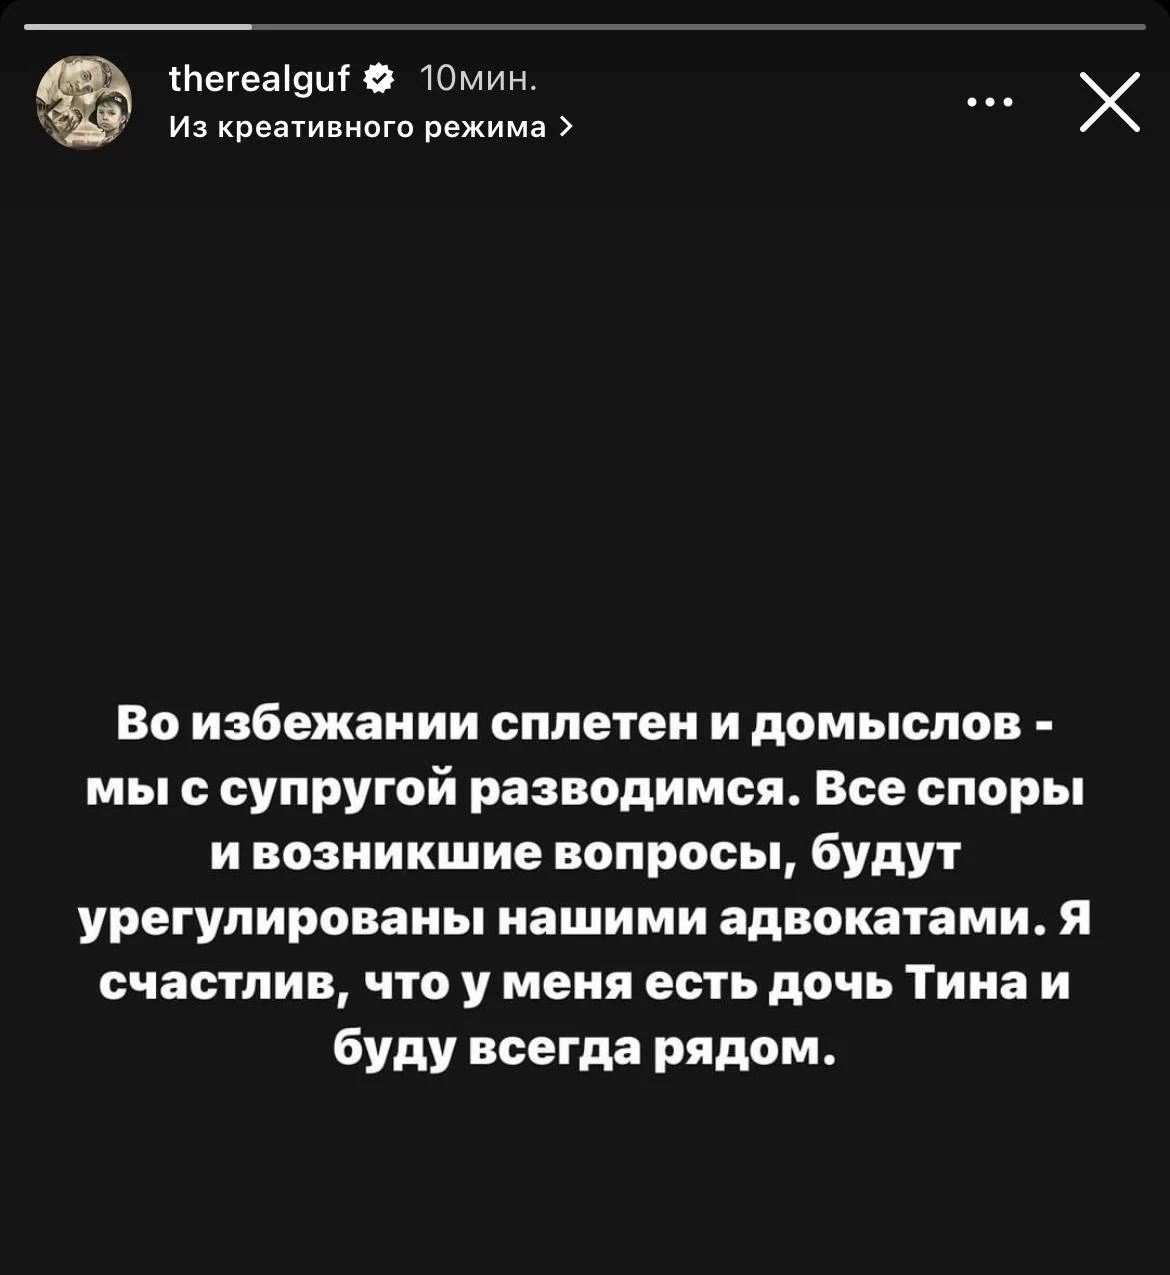 therealguf / Instagram (входит в корпорацию Meta, признана экстремистской и запрещена в России)